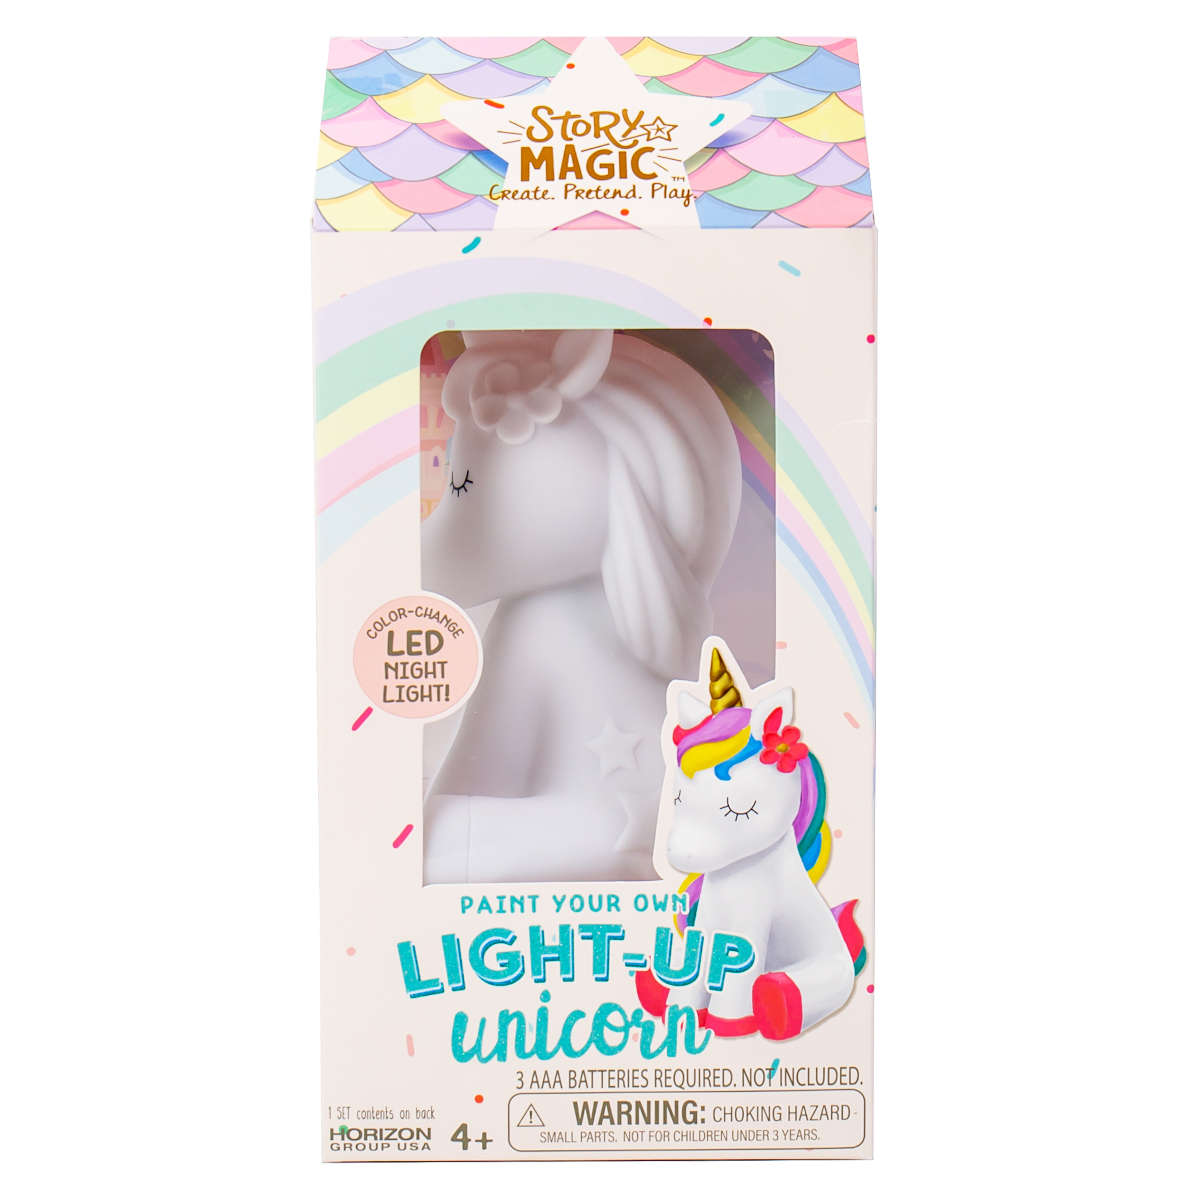 Story Magic PYO Light-Up Unicorn by Horizon Group, USA